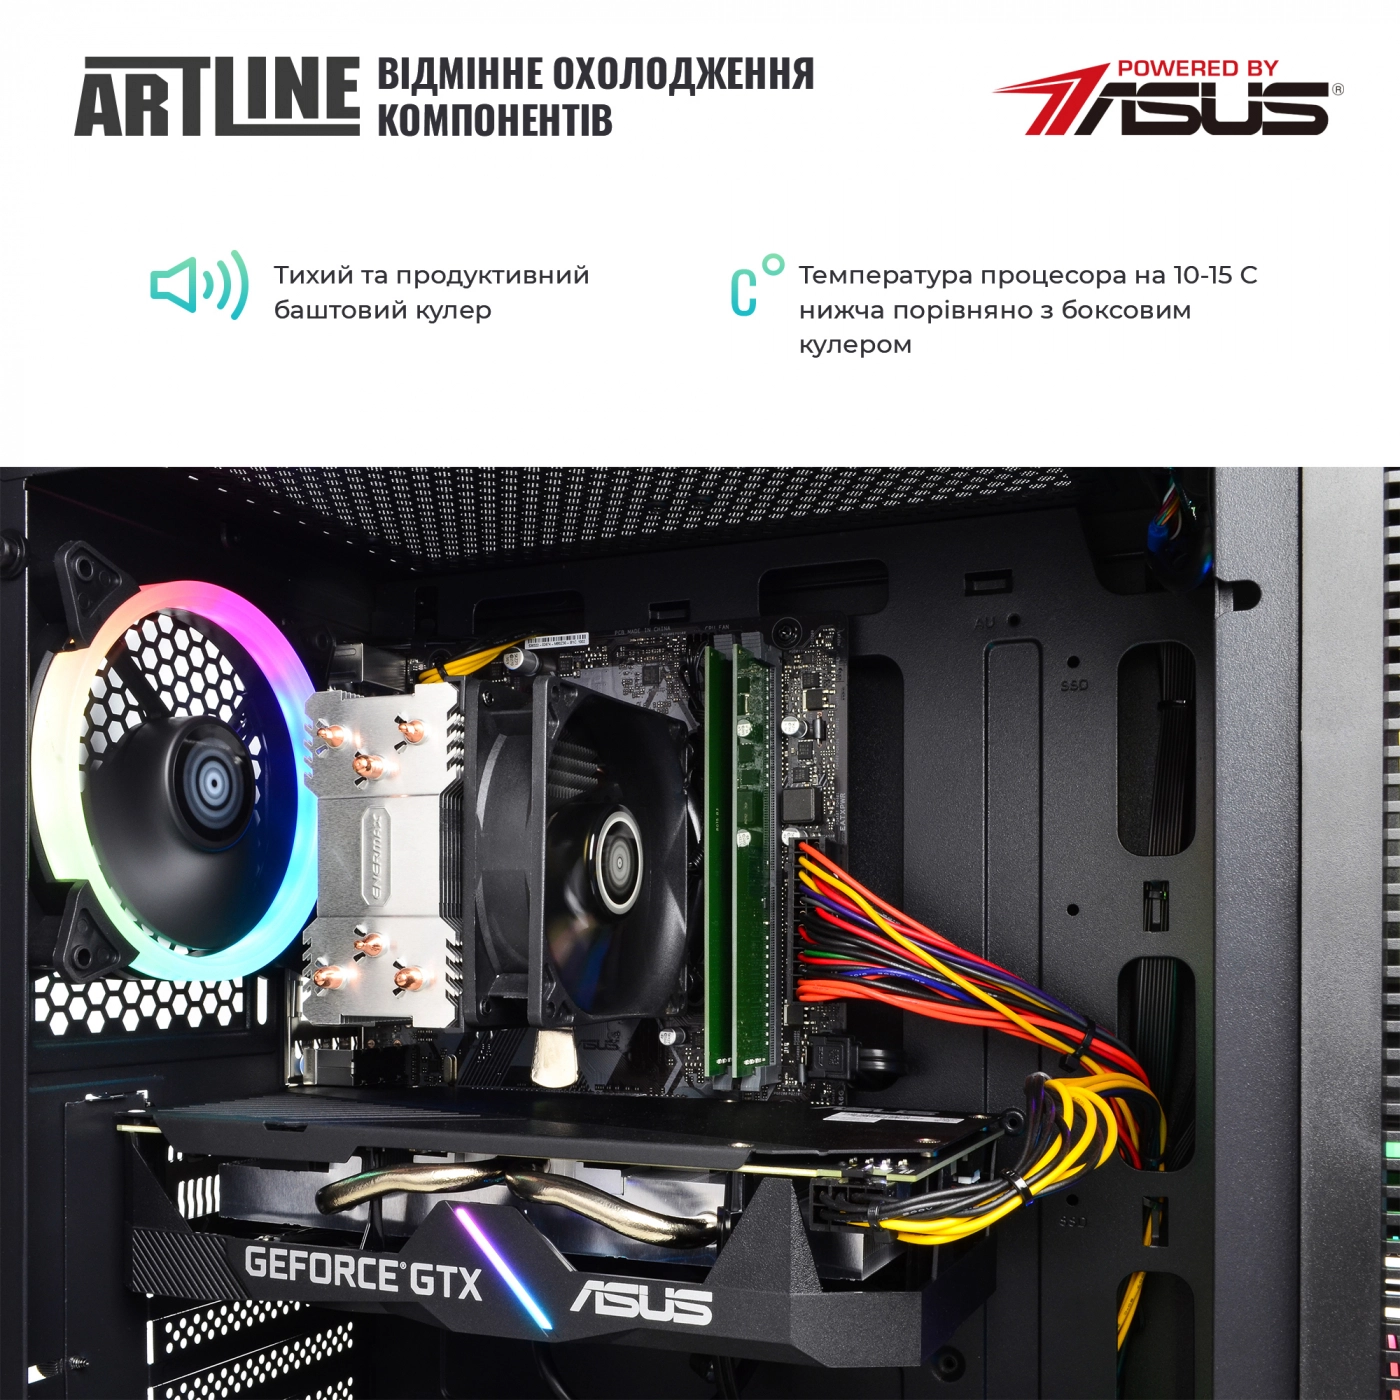 Купить Компьютер ARTLINE Gaming X55v29 - фото 3